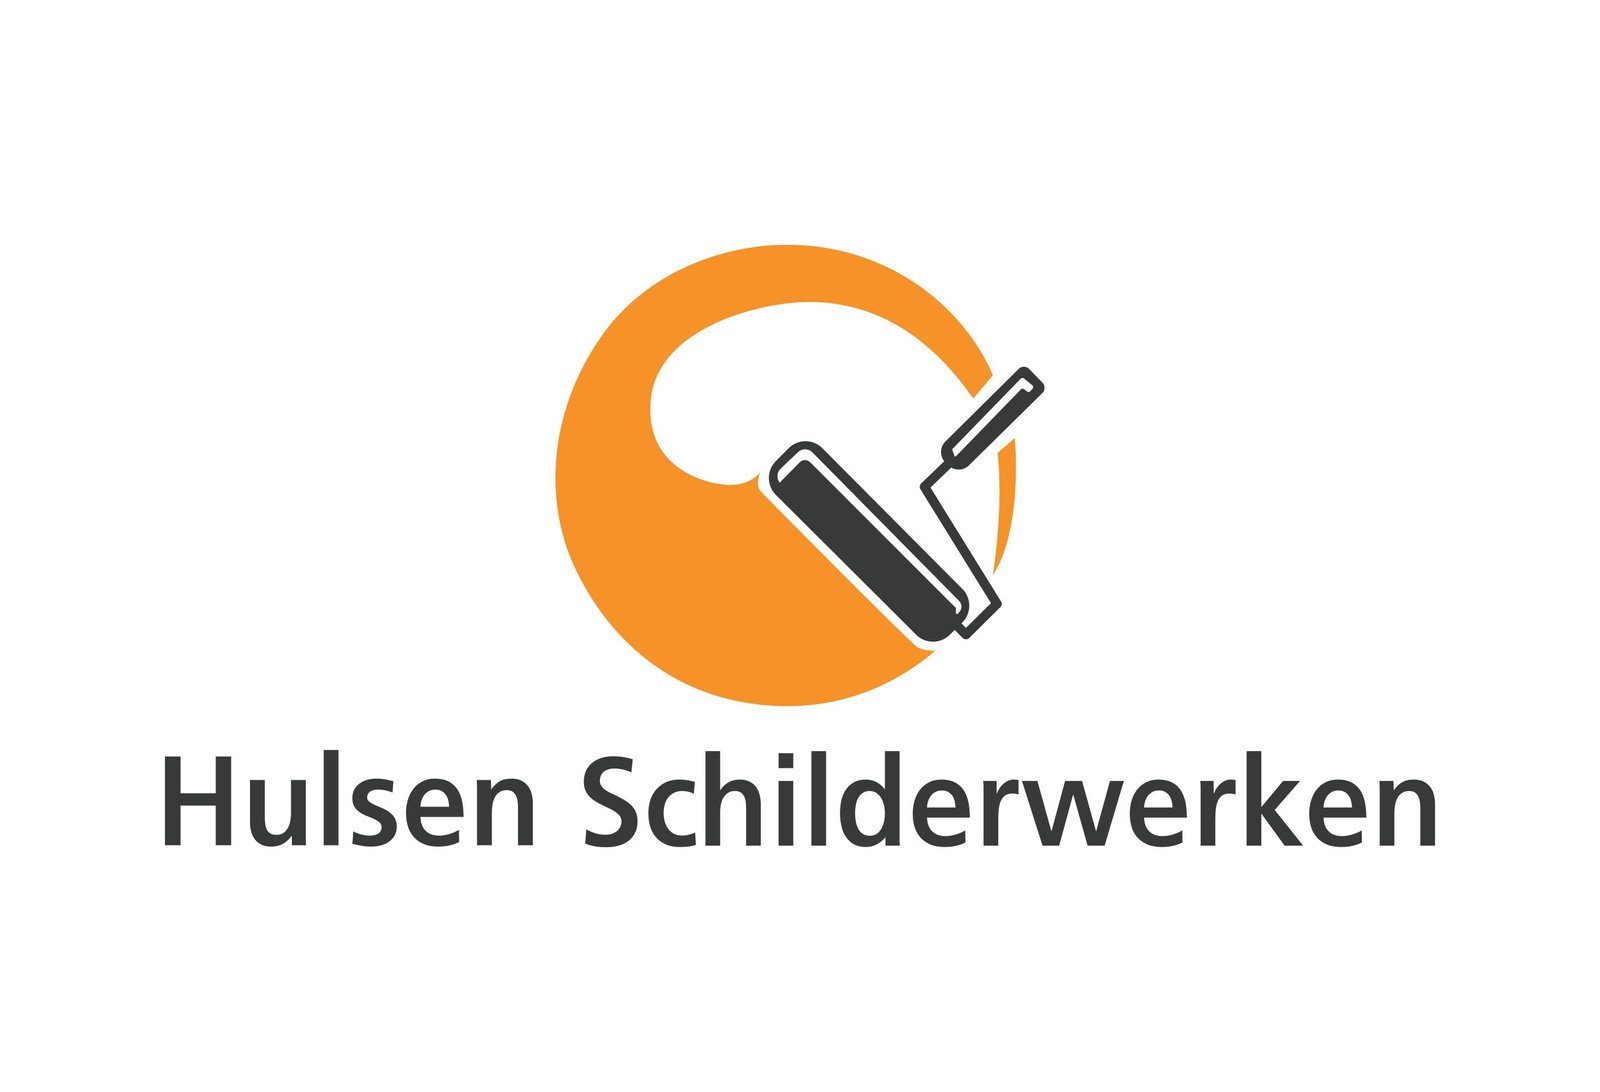 Hulsen Schilderwerken Logo